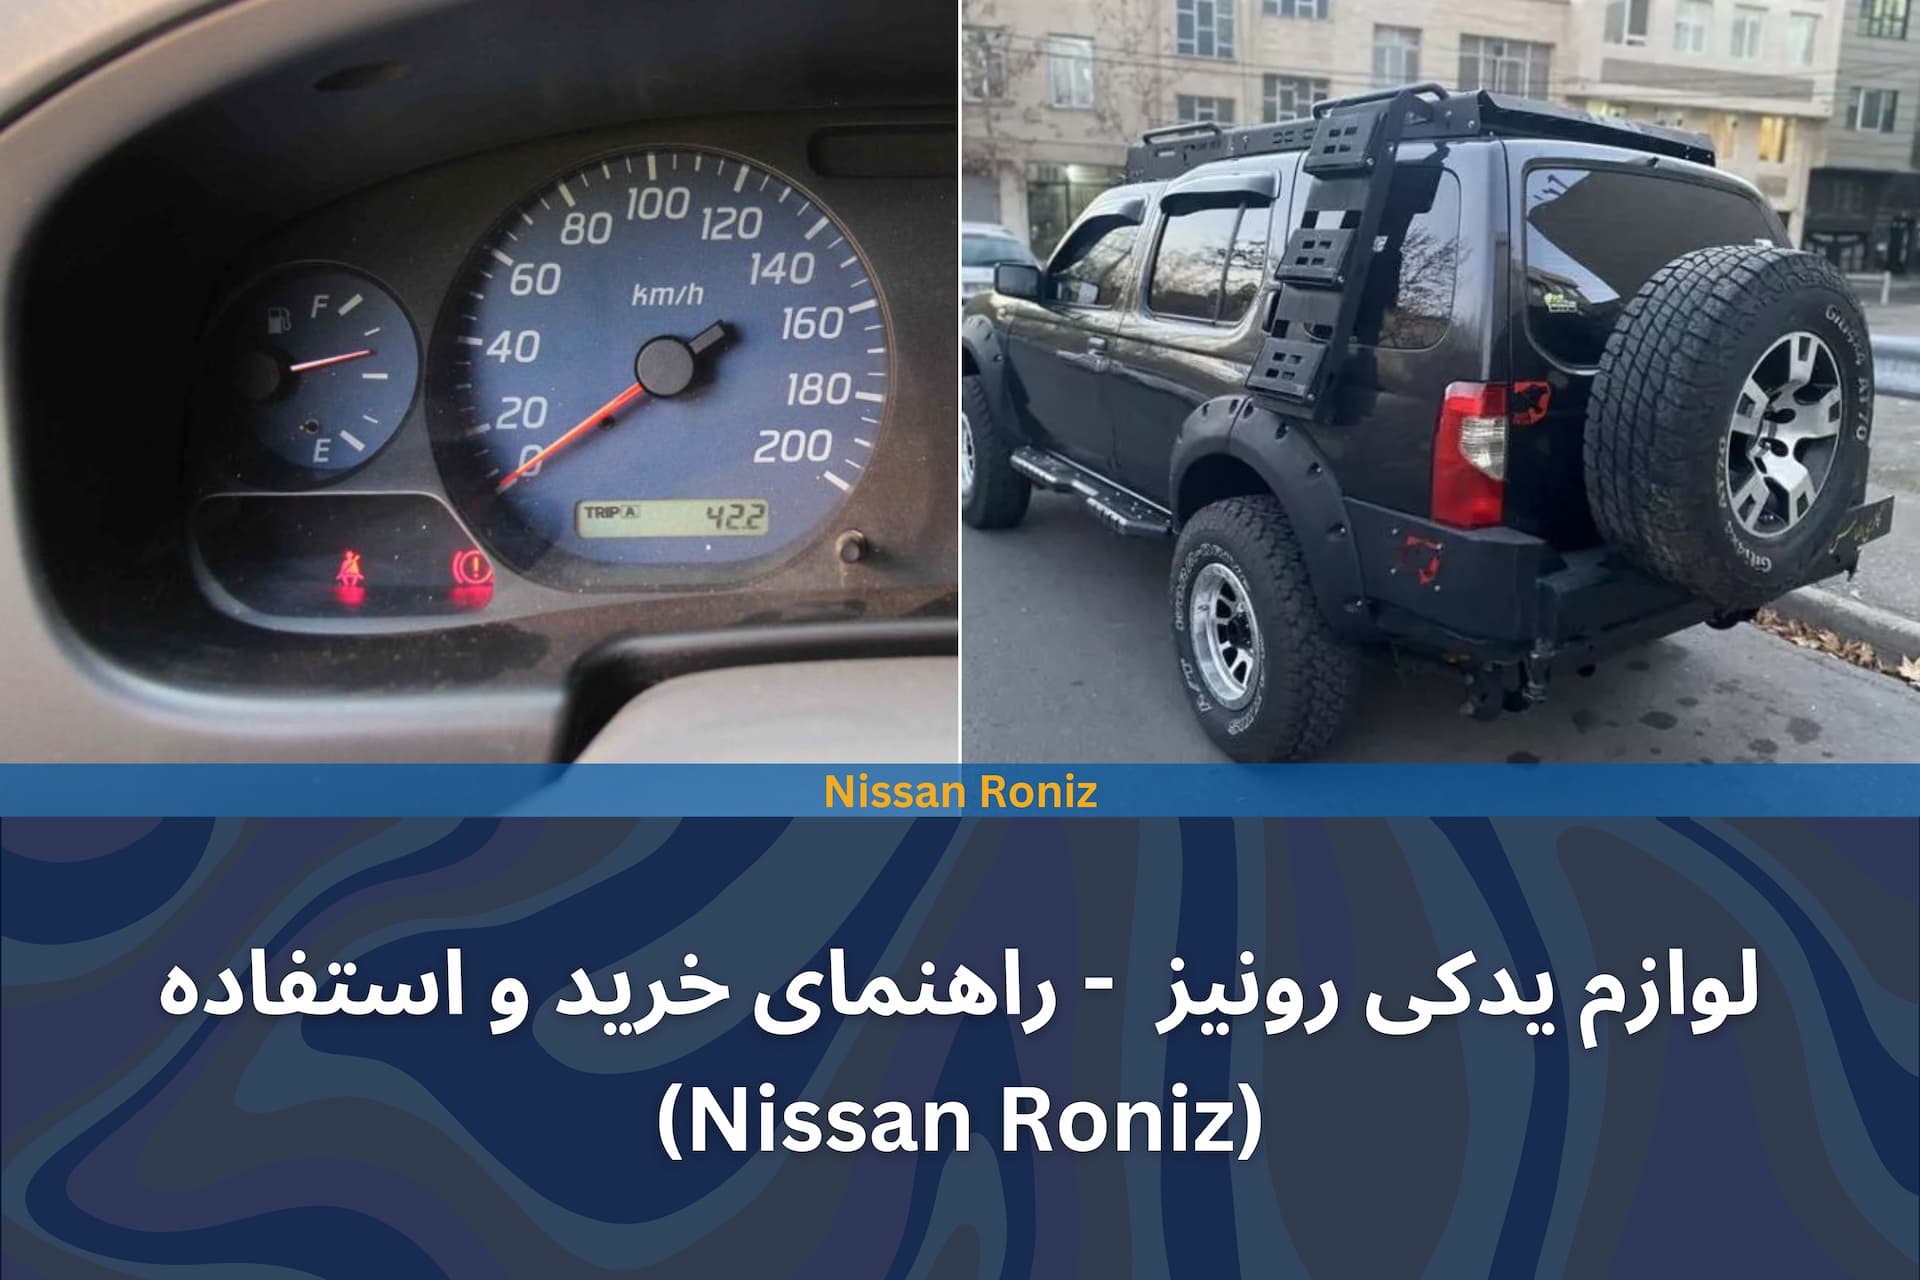 لوازم یدکی رونیز - راهنمای خرید و استفاده (Nissan Roniz)